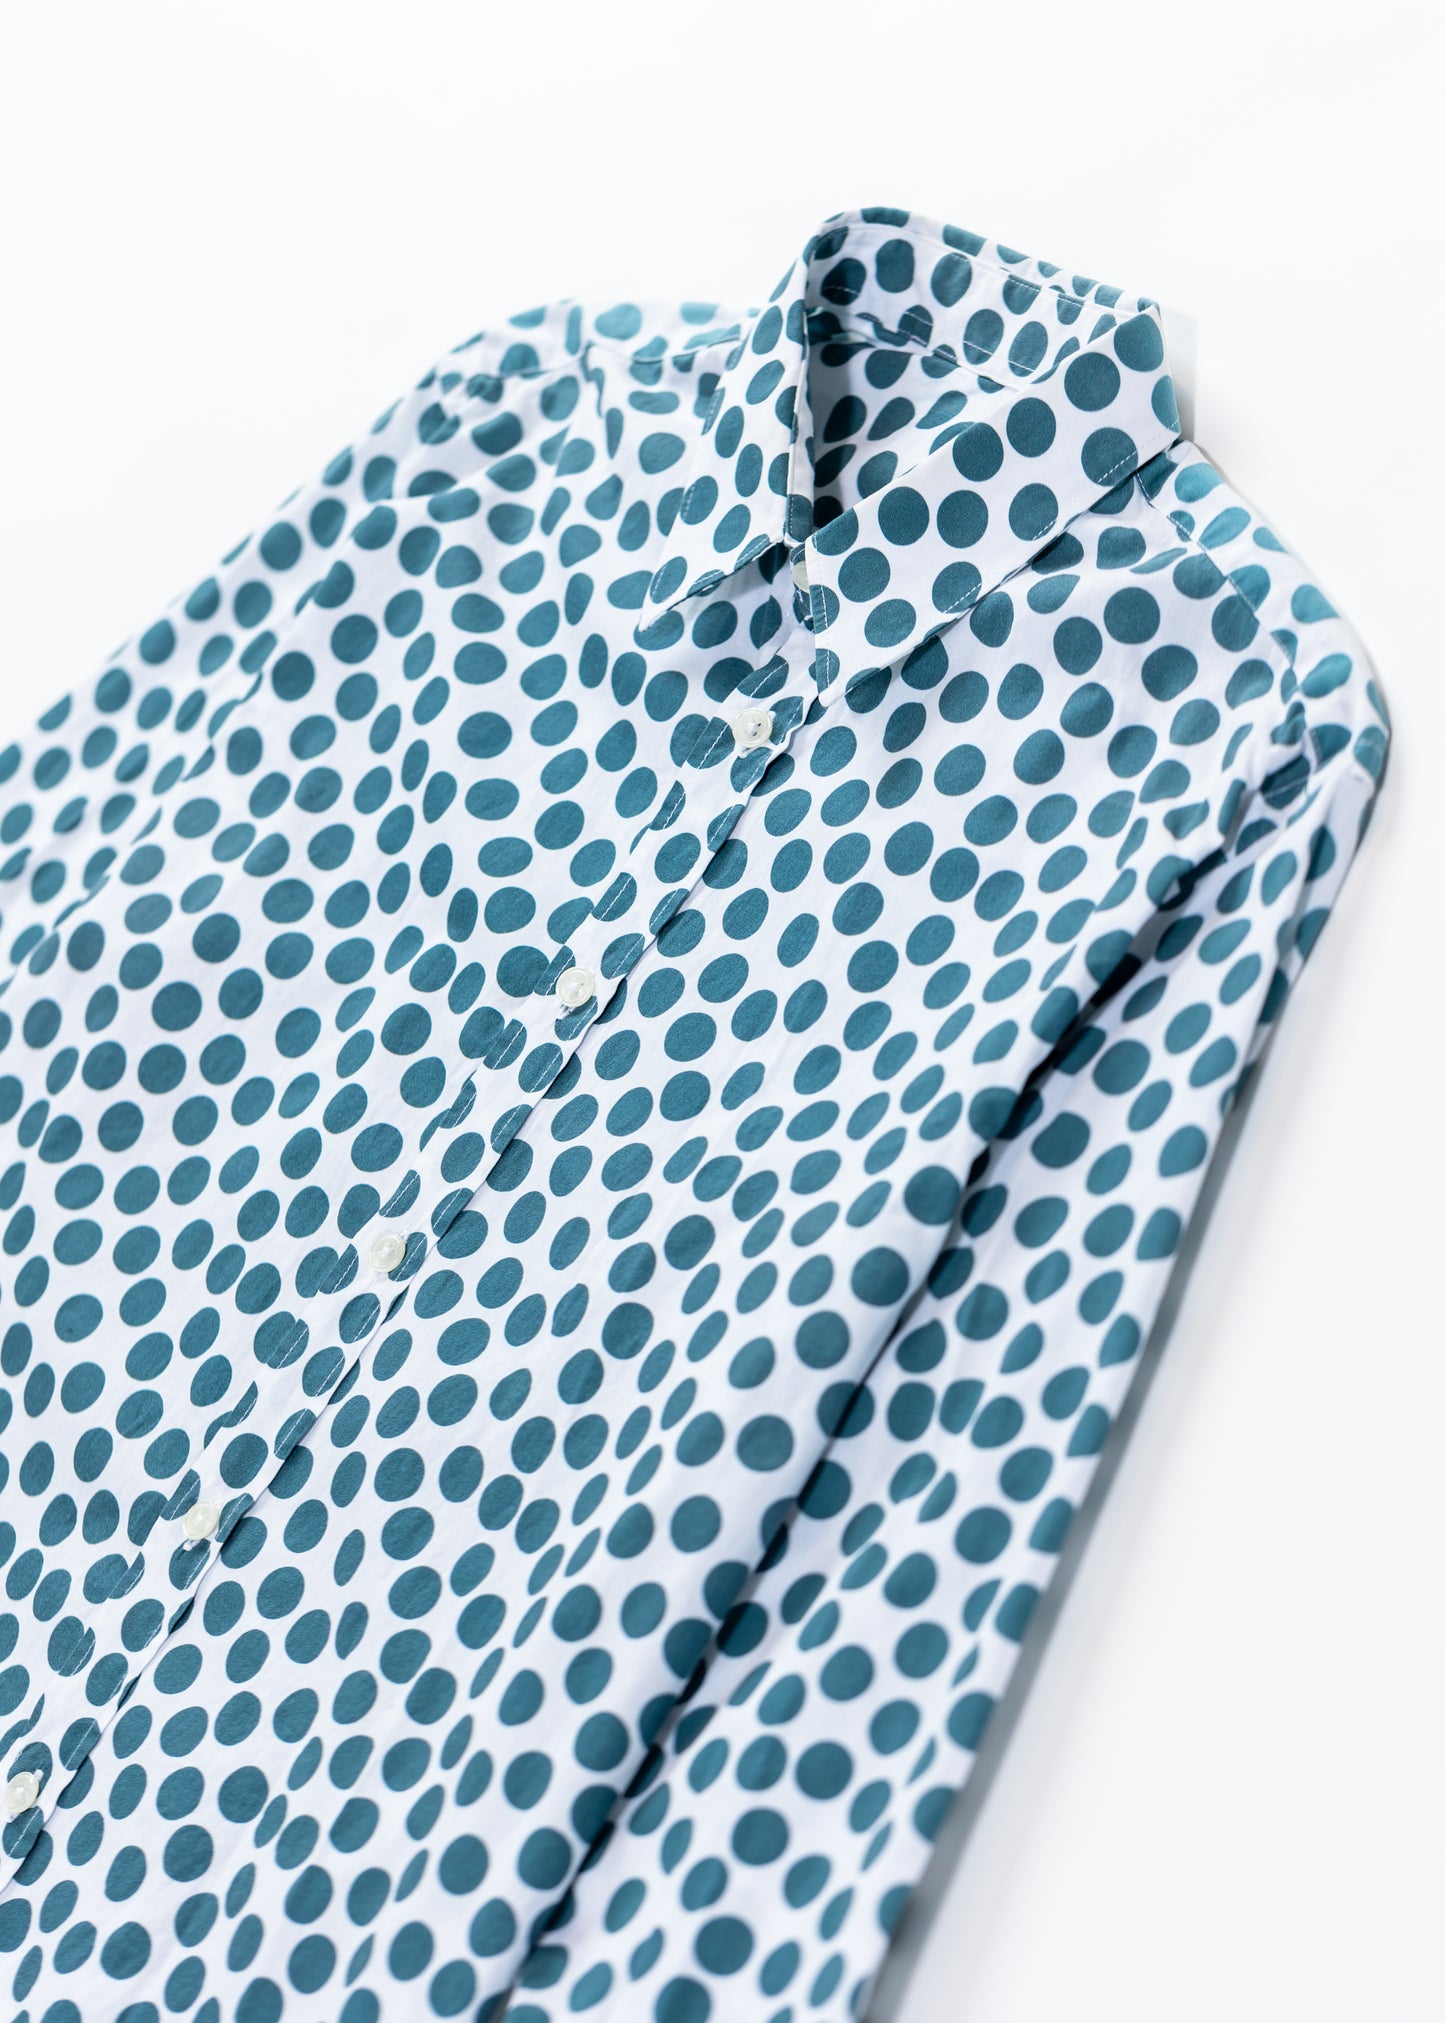 Polka dots long sleeves shirt